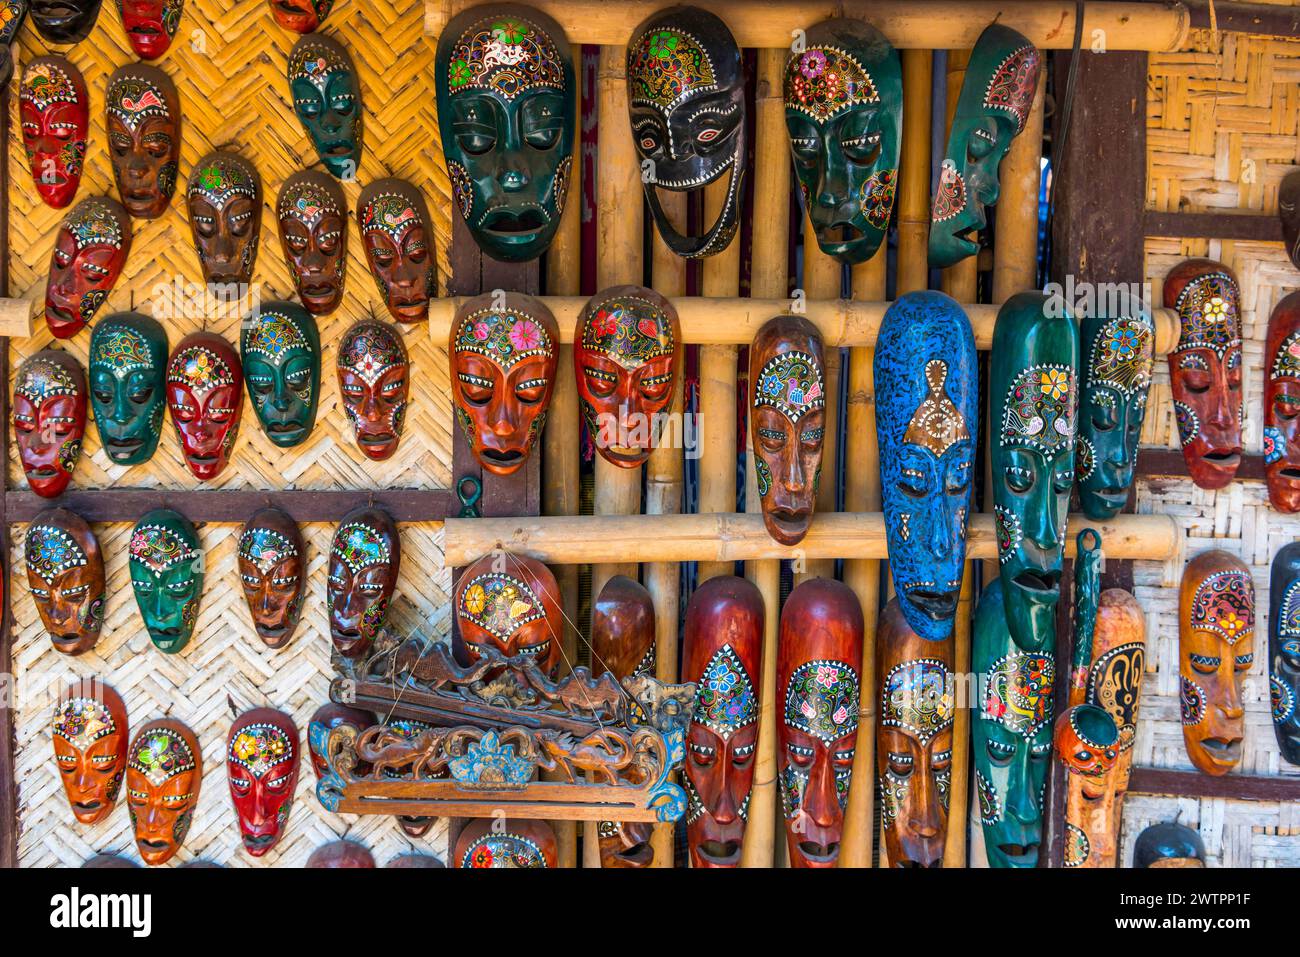 Masques traditionnels en bois sur un marché, colorés, artisanat, artisanat, tradition, visage, voyage, vacances, tourisme, masque, culture, sculpture, tête Banque D'Images